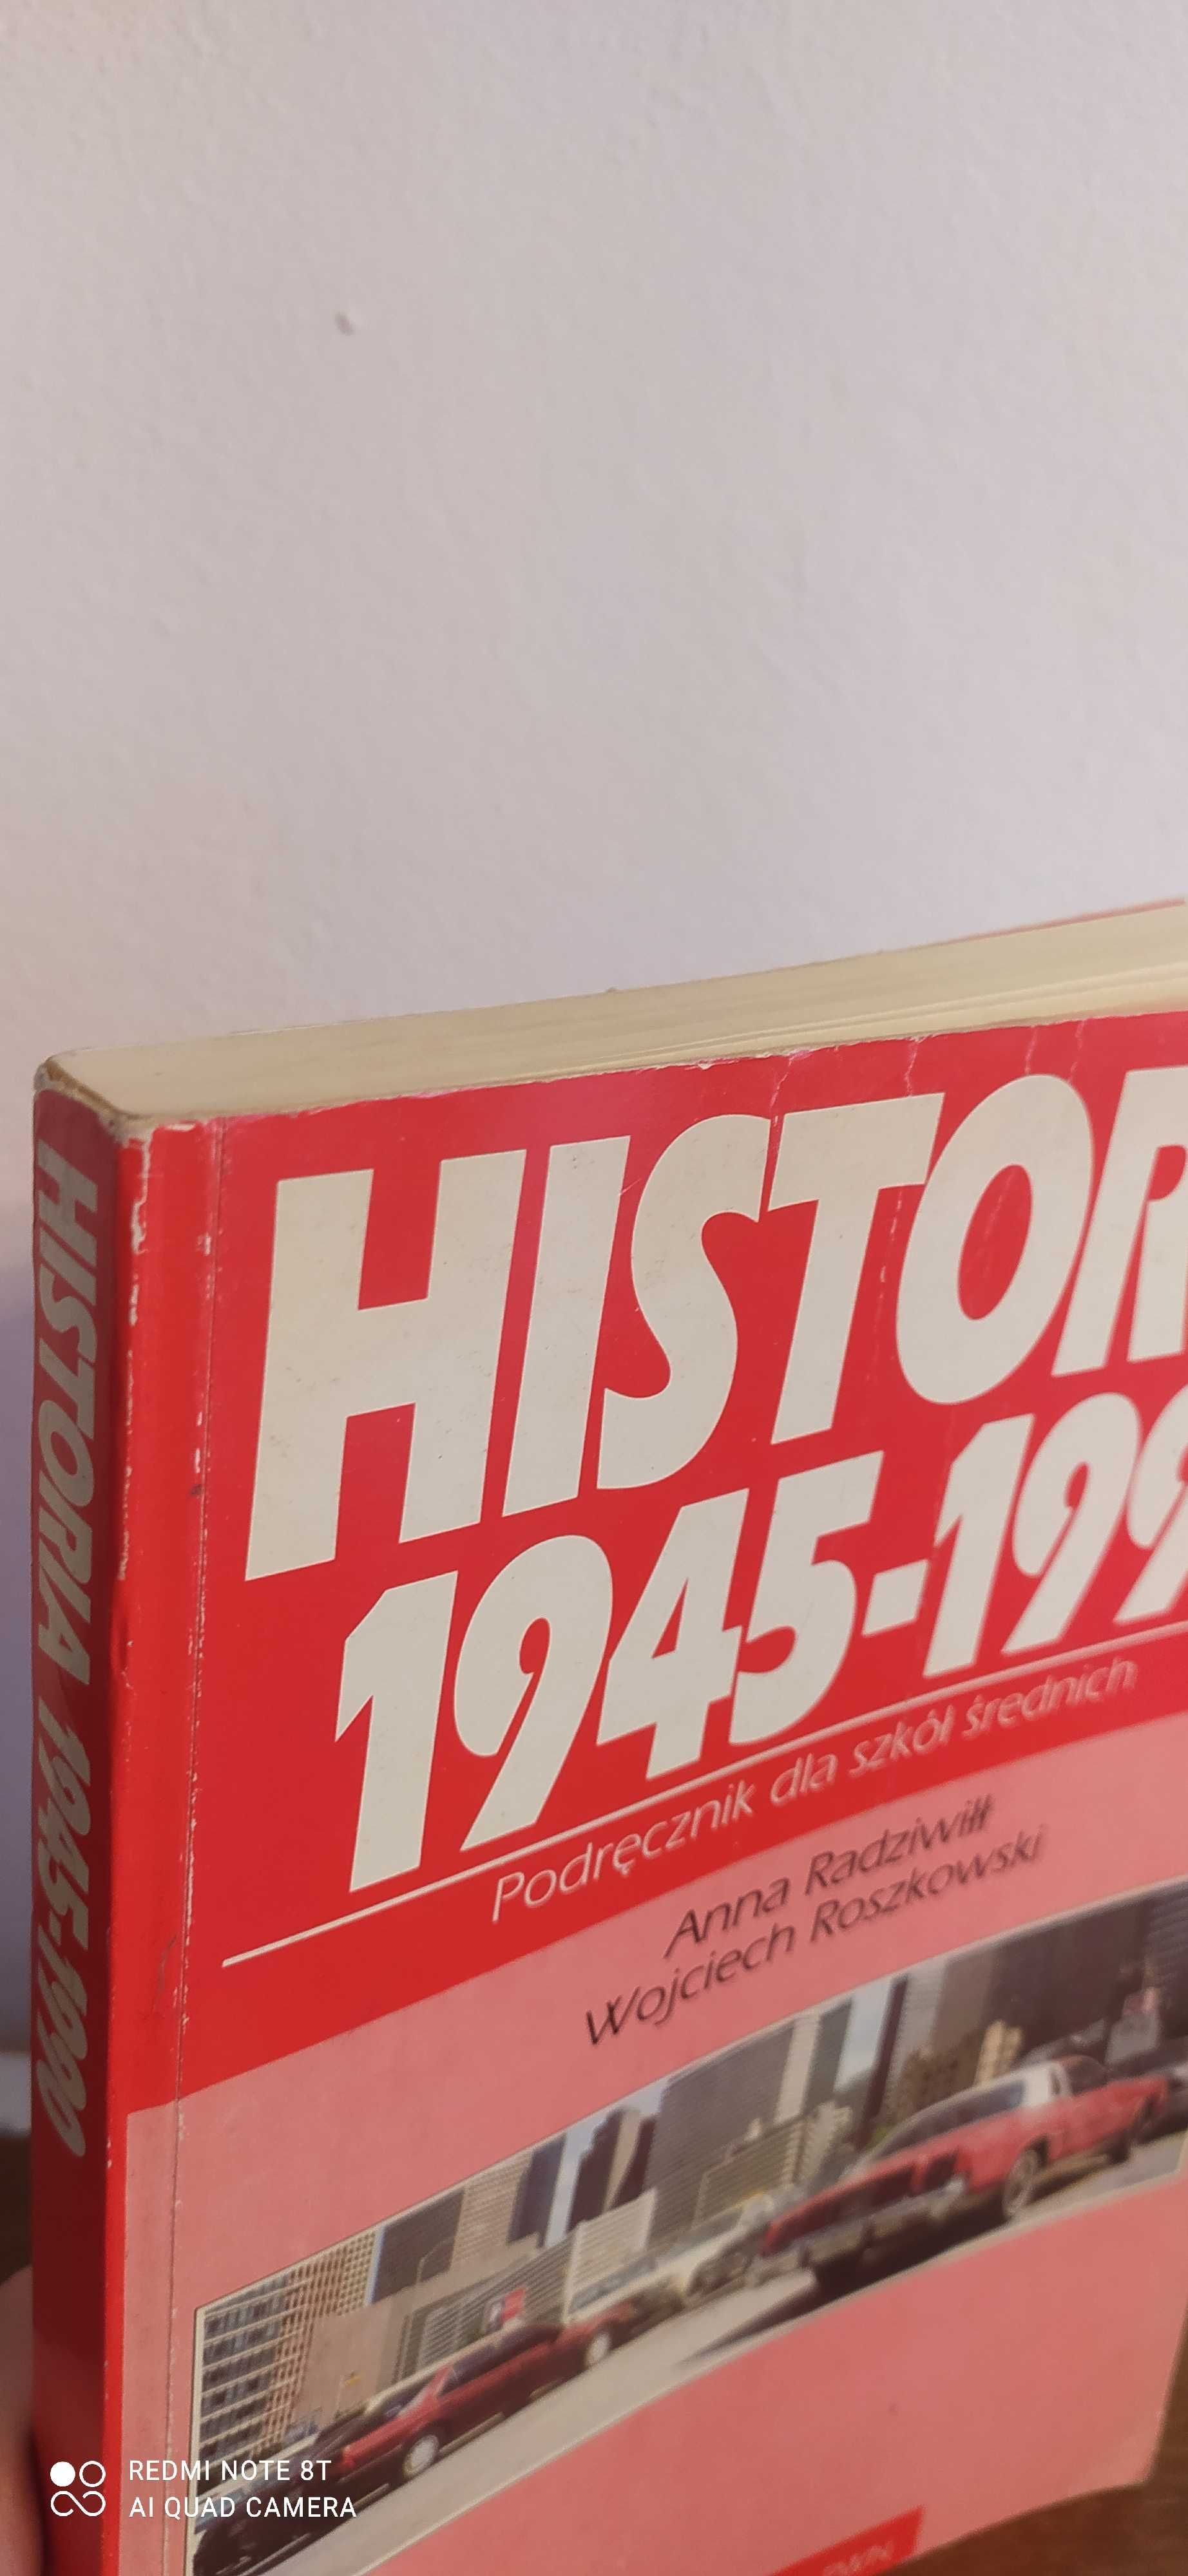 Podręcznik Historia 1945 - 1990 Radziwiłł Roszkowski, PWN 1994